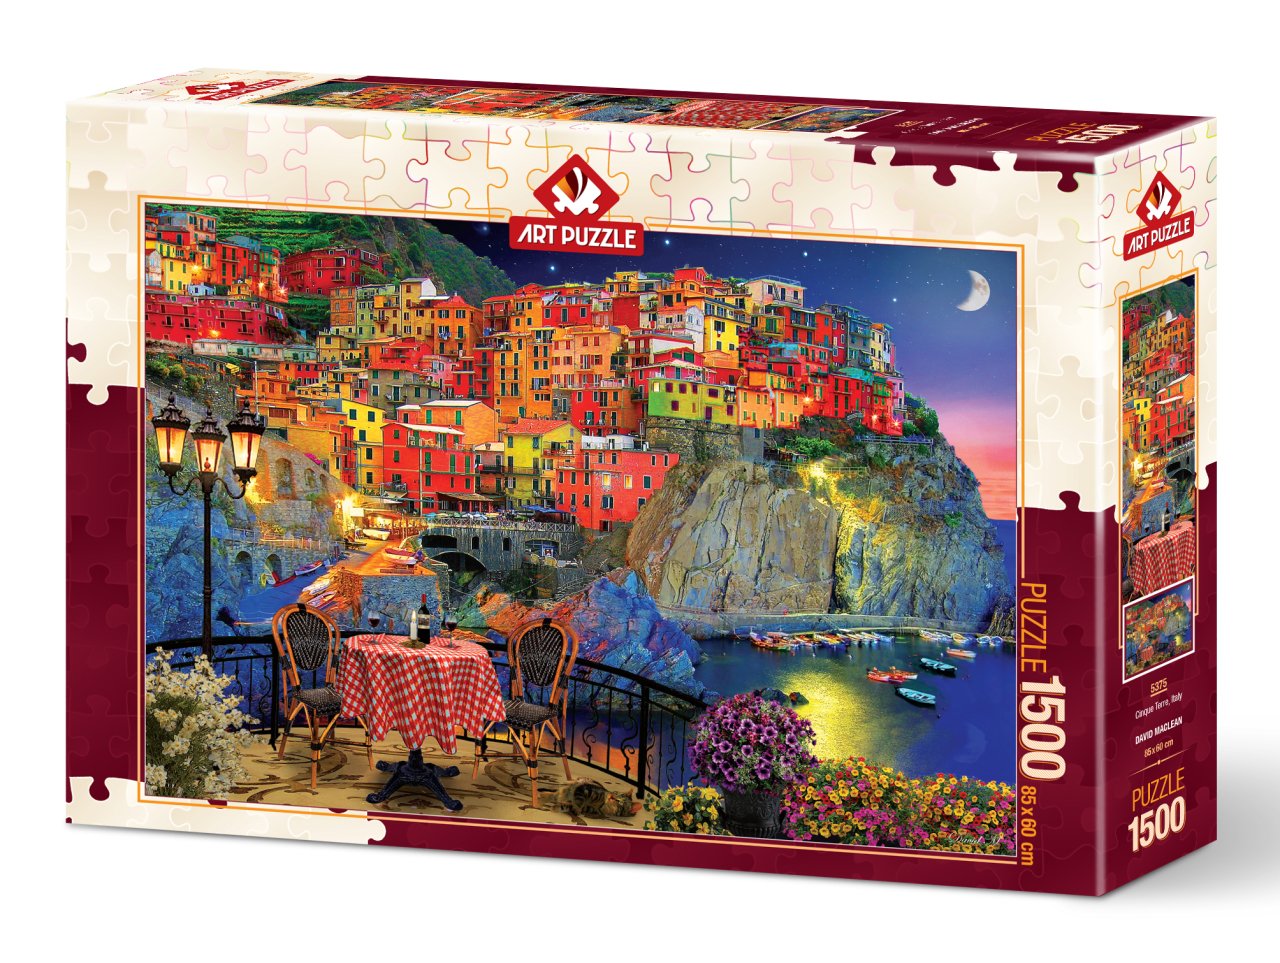 Art Puzzle - Cinque Terre - Italy - 1500 Piece Jigsaw Puzzle